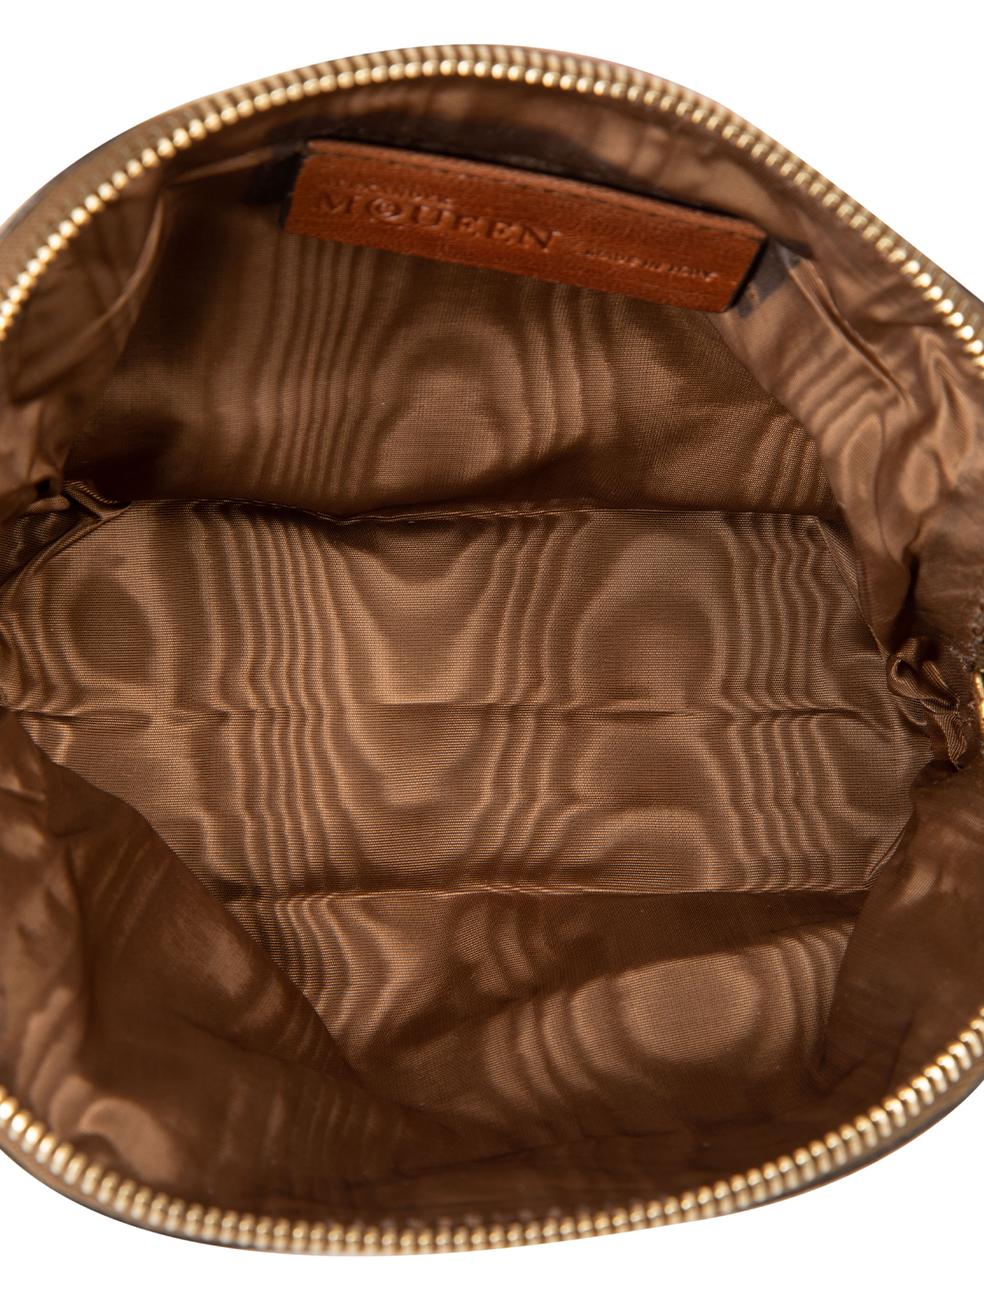 Alexander McQueen Women's Brown Leather Cosmetic Bag 5